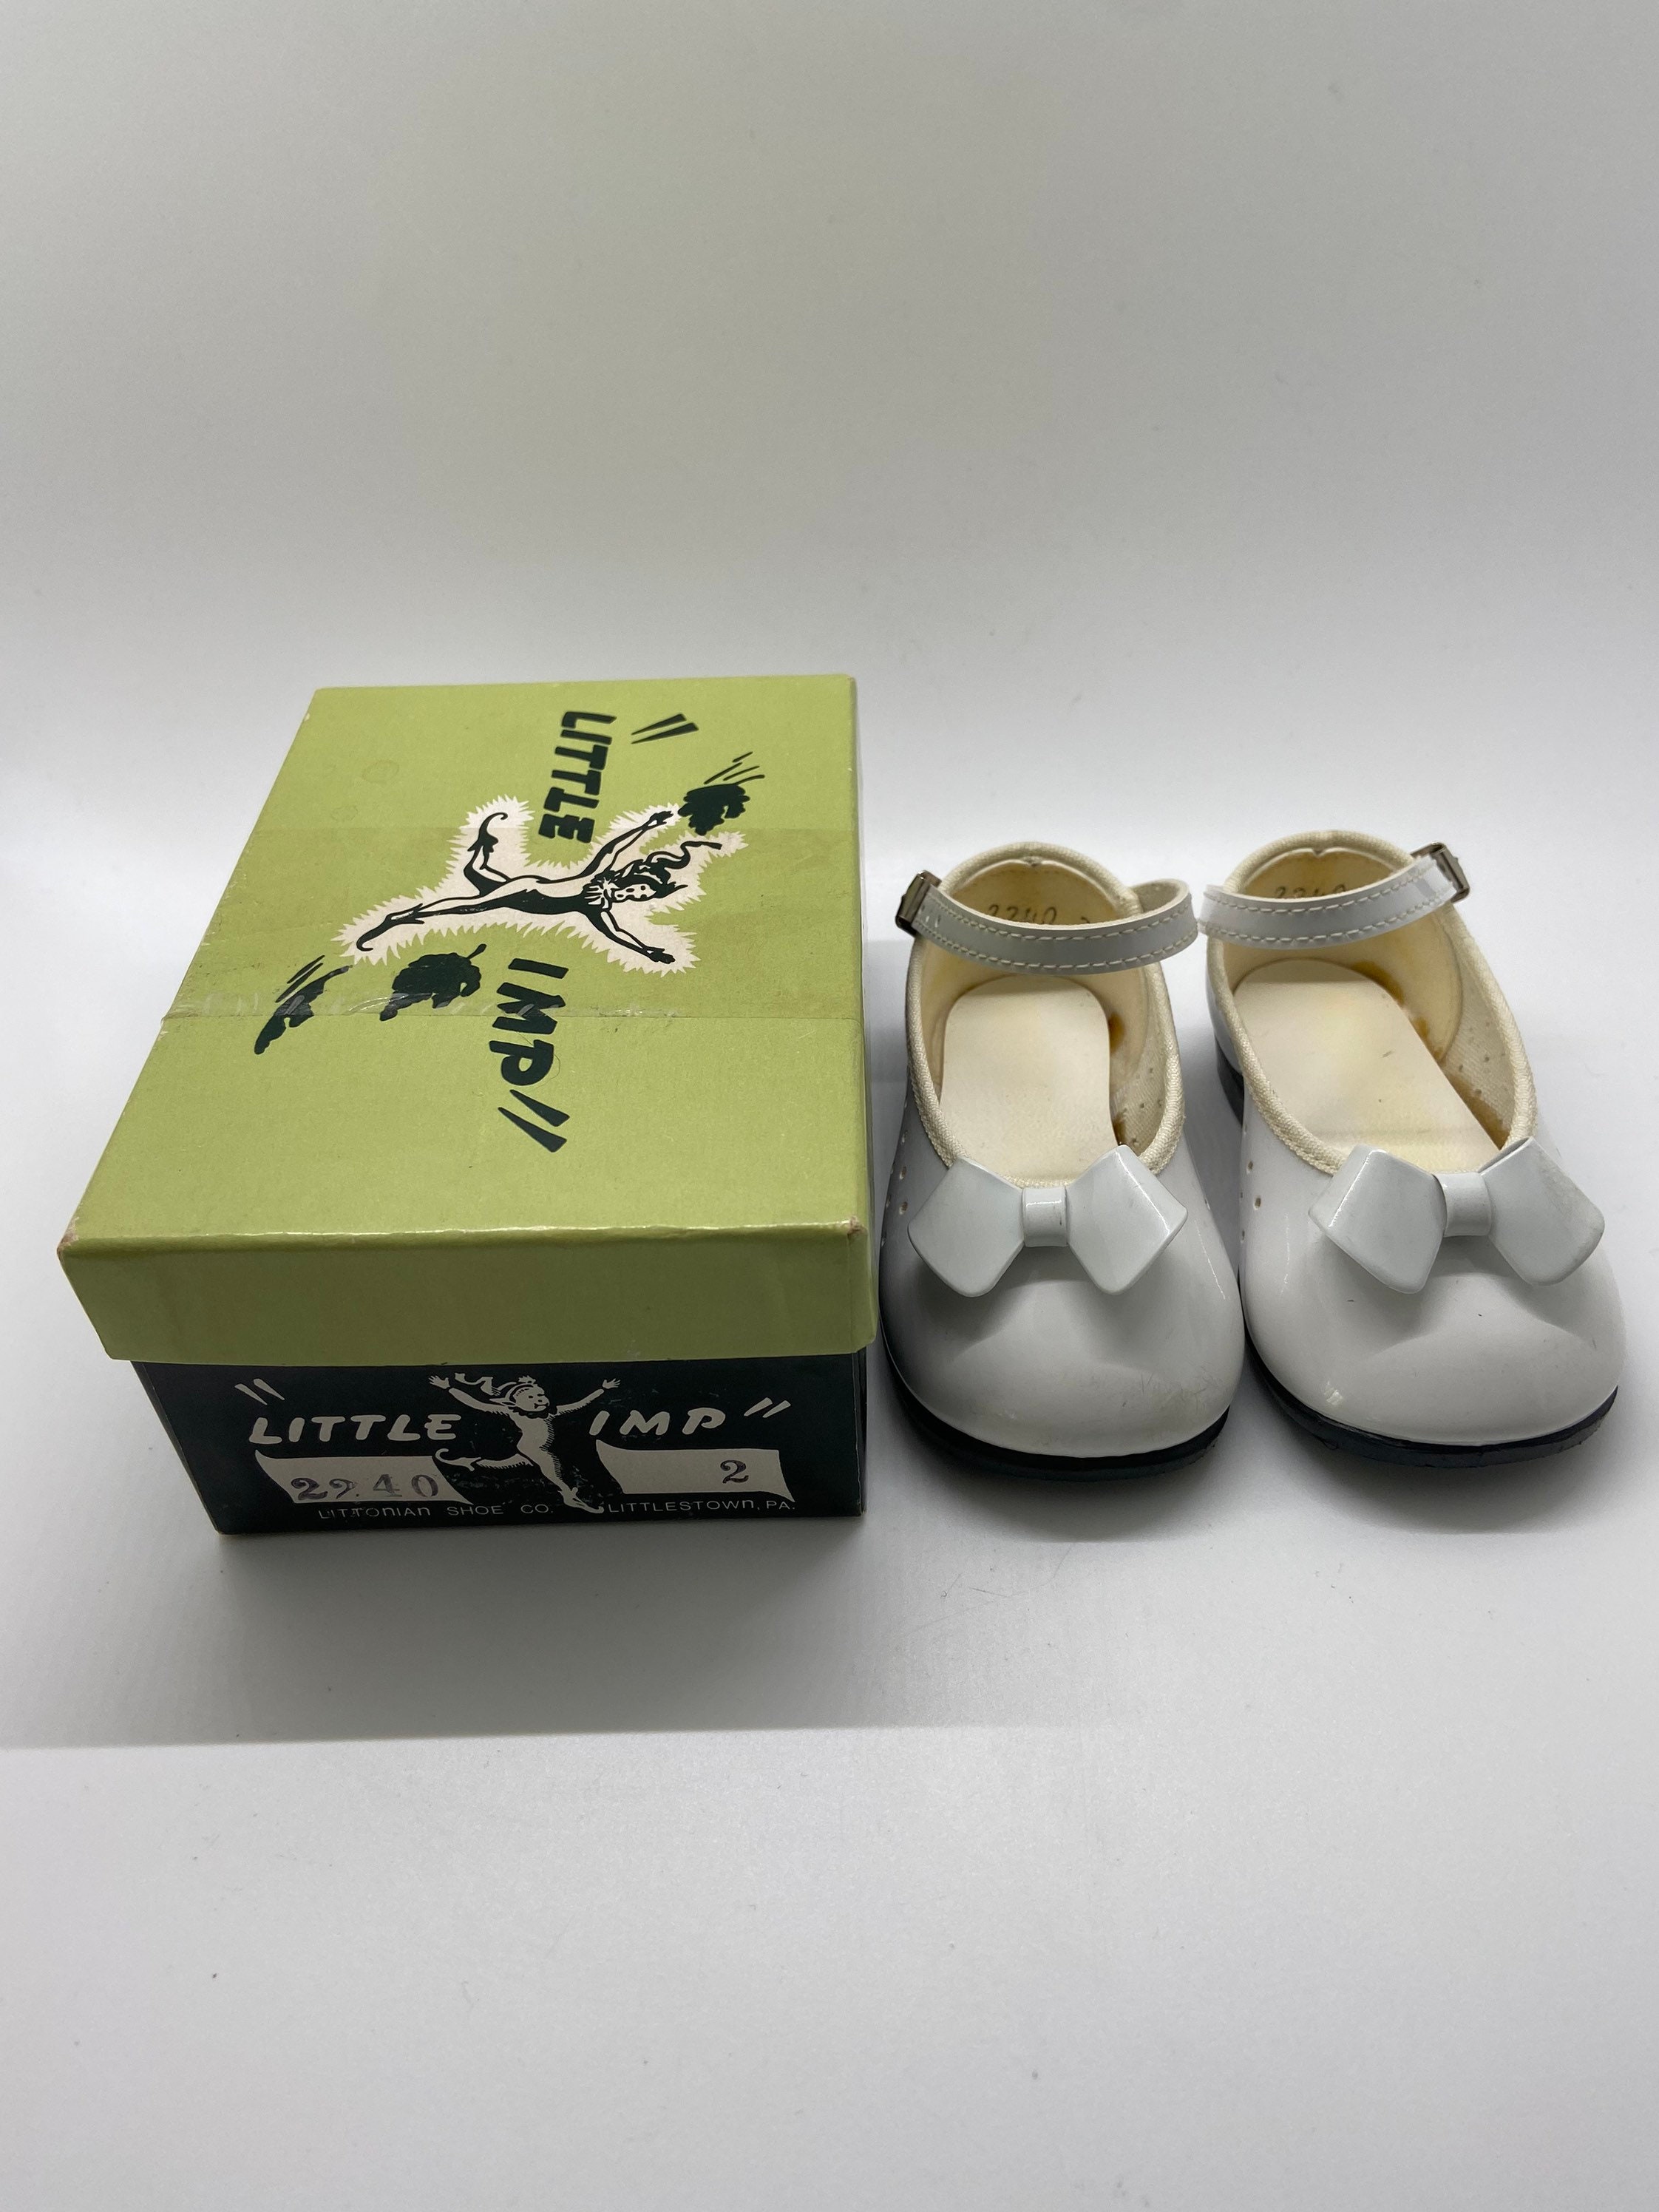 Schoenen Meisjesschoenen Mary Janes 1940’s Vintage “Little Imp” Brand Children’s White Mary Jane’s Shoes Size 2 Littonion Shoe Company Man Made In Littlestown Pa. 